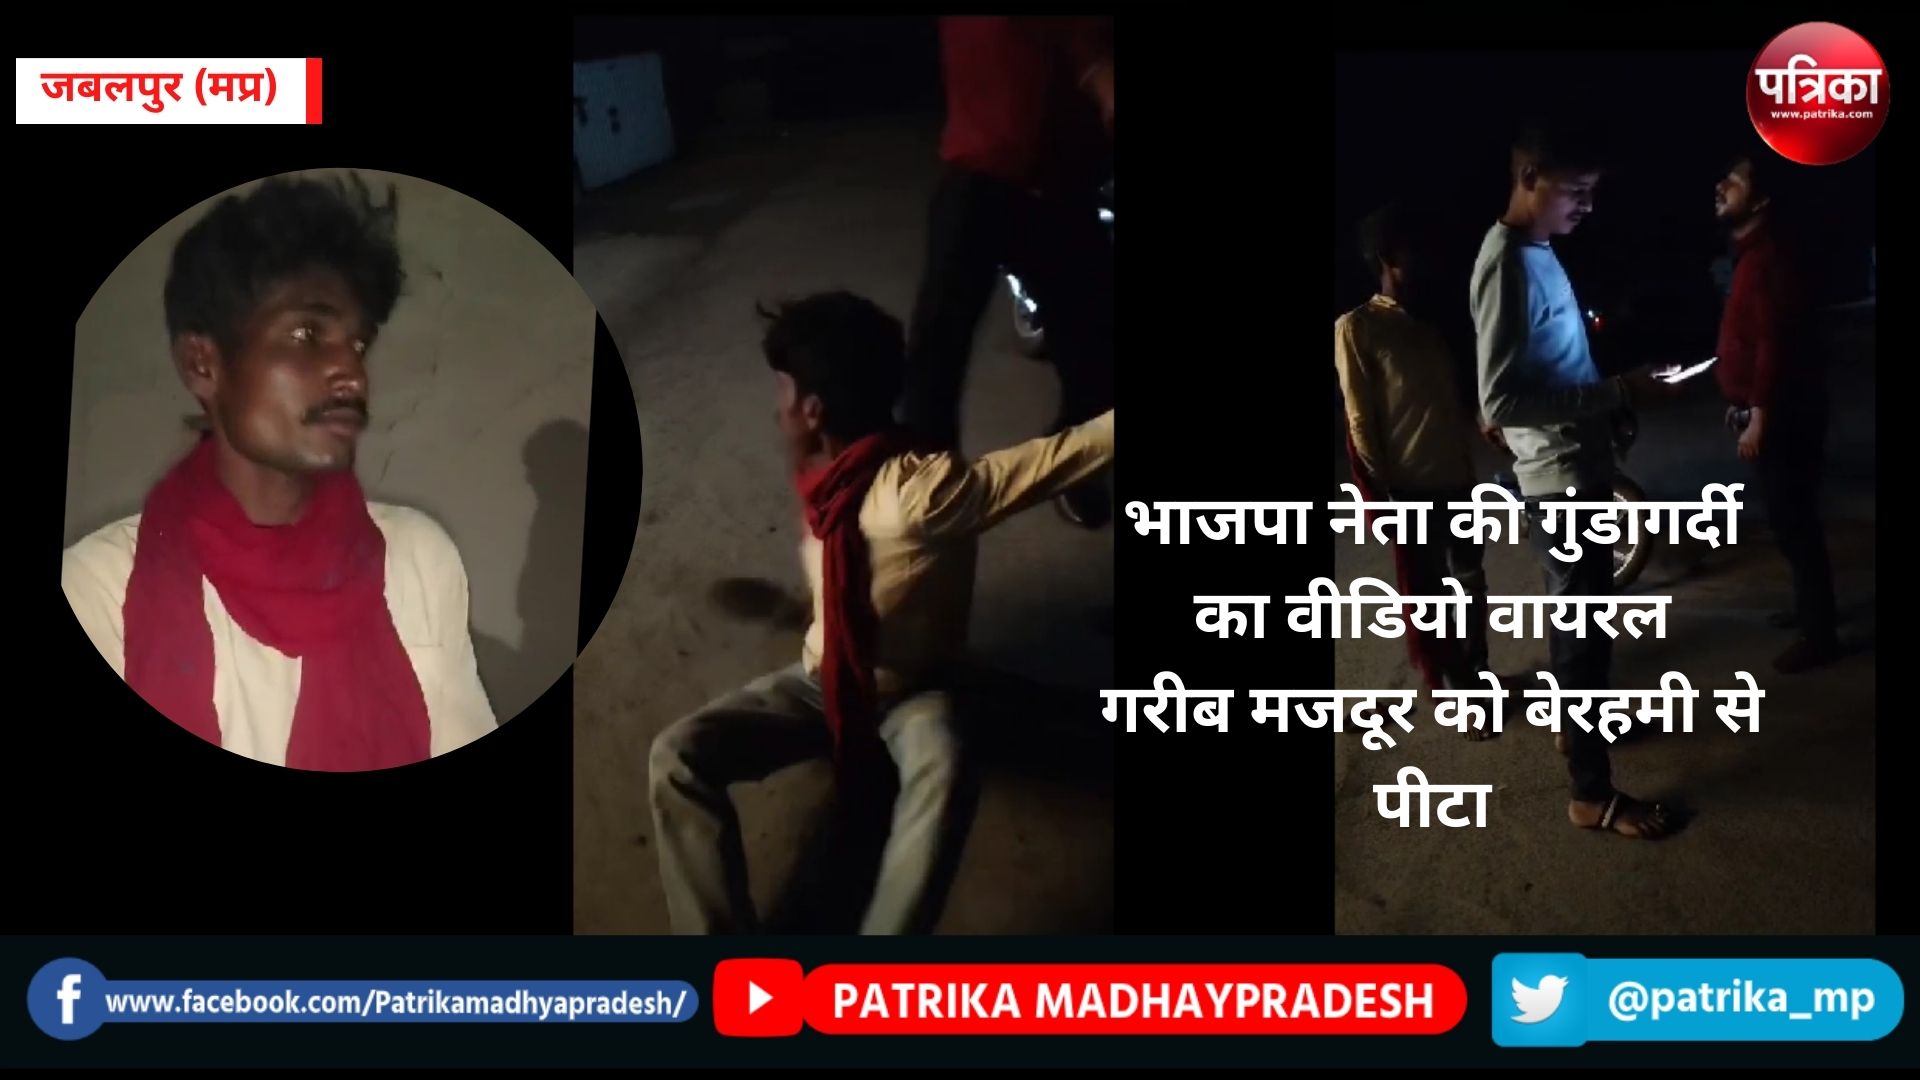 भाजपा नेता की गुंडागर्दी का वीडियो वायरल, गरीब मजदूर को बेरहमी से पीटा